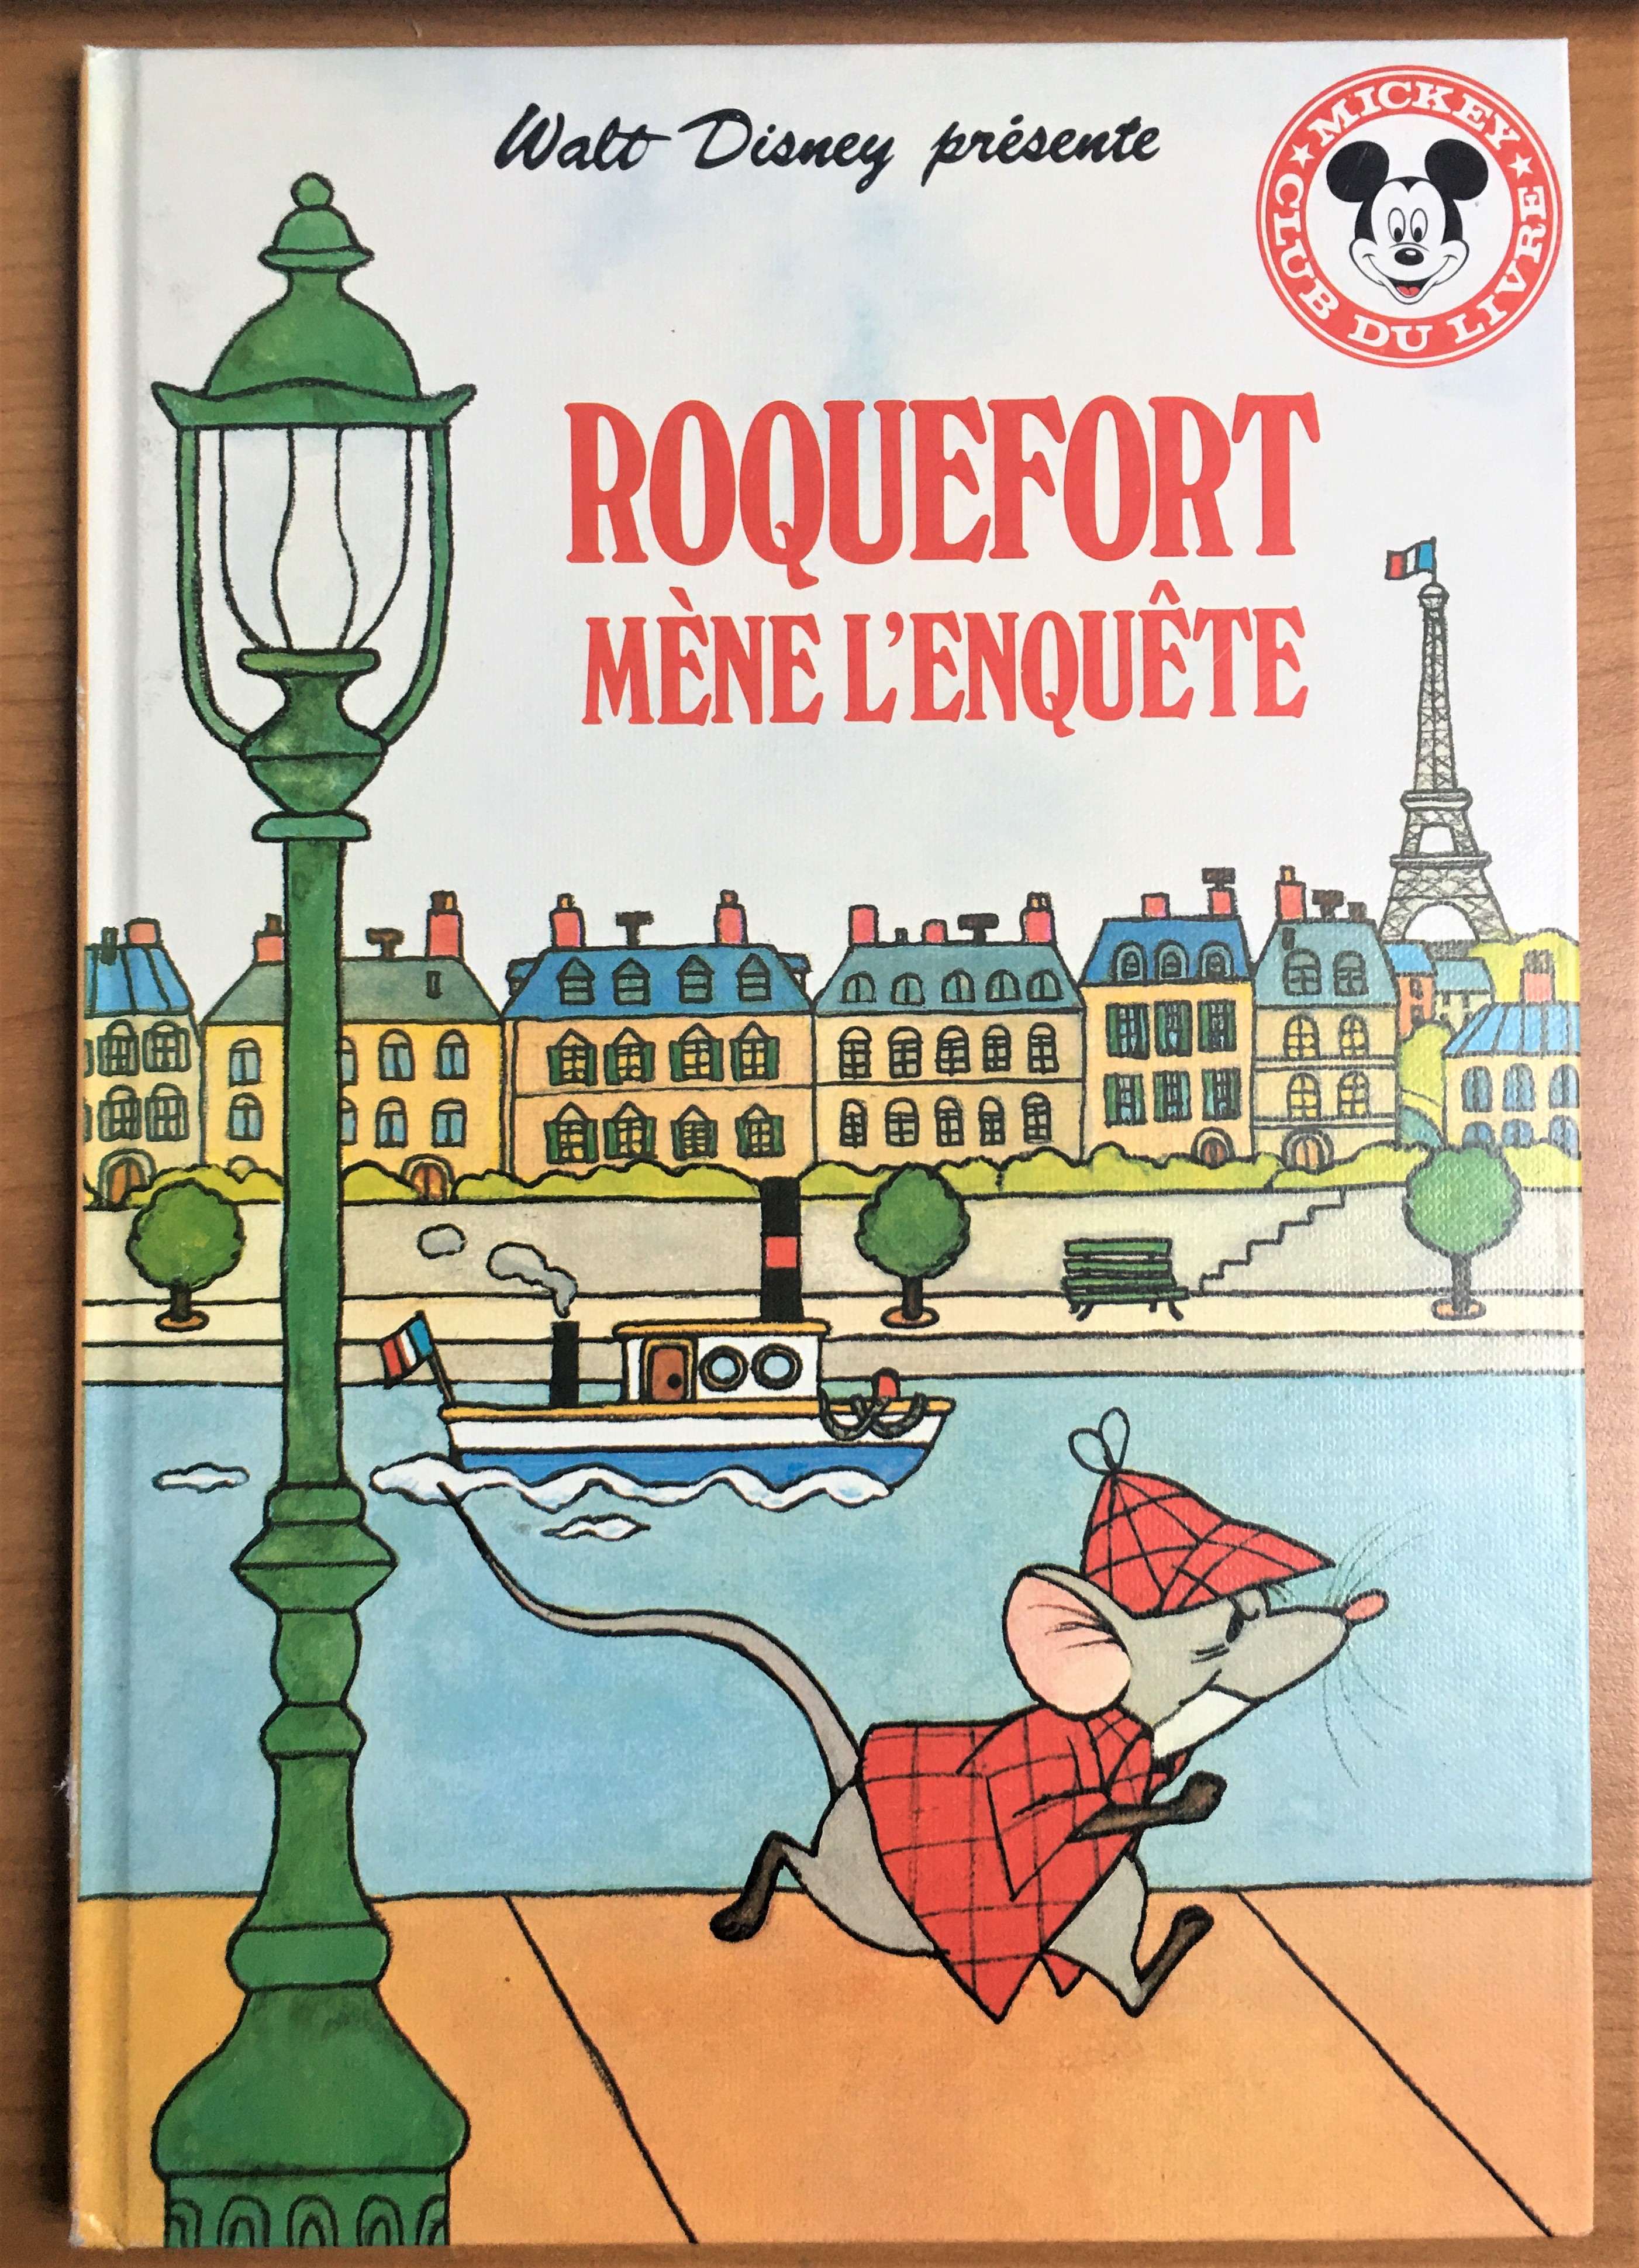 wd-roquefort